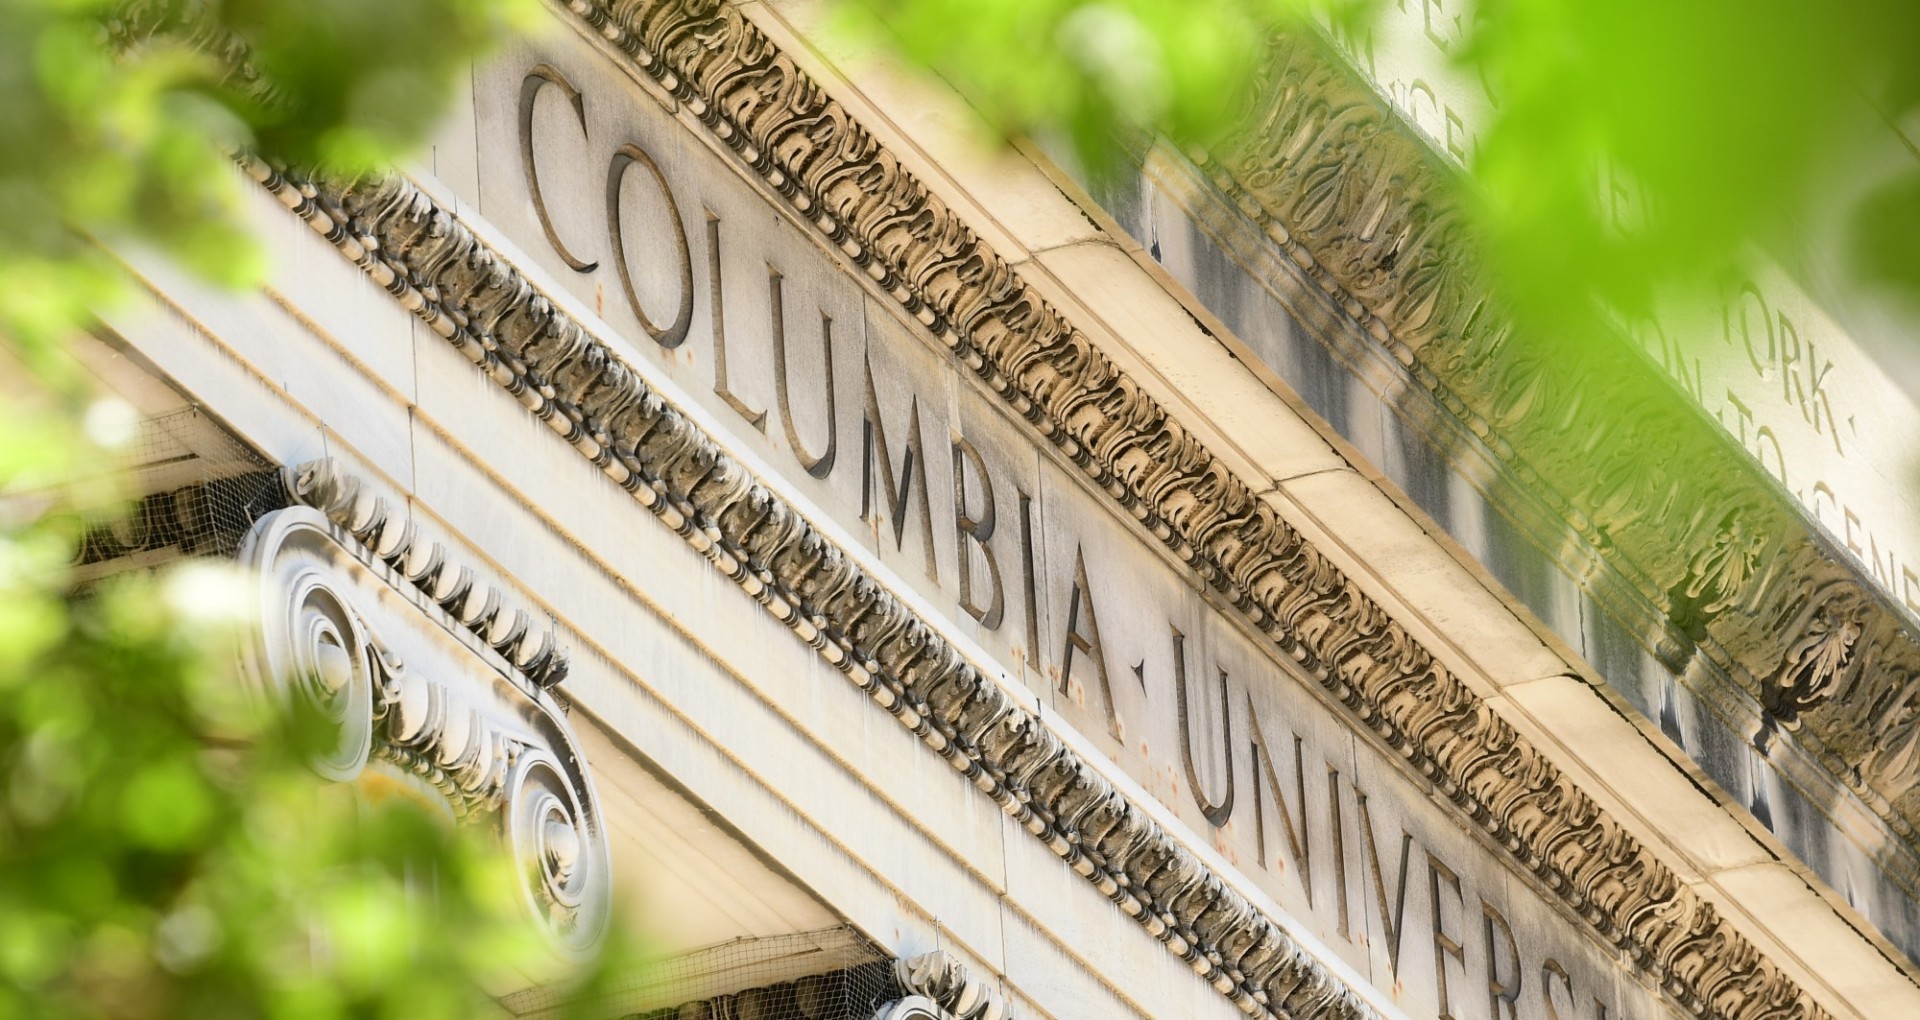 Columbia University building